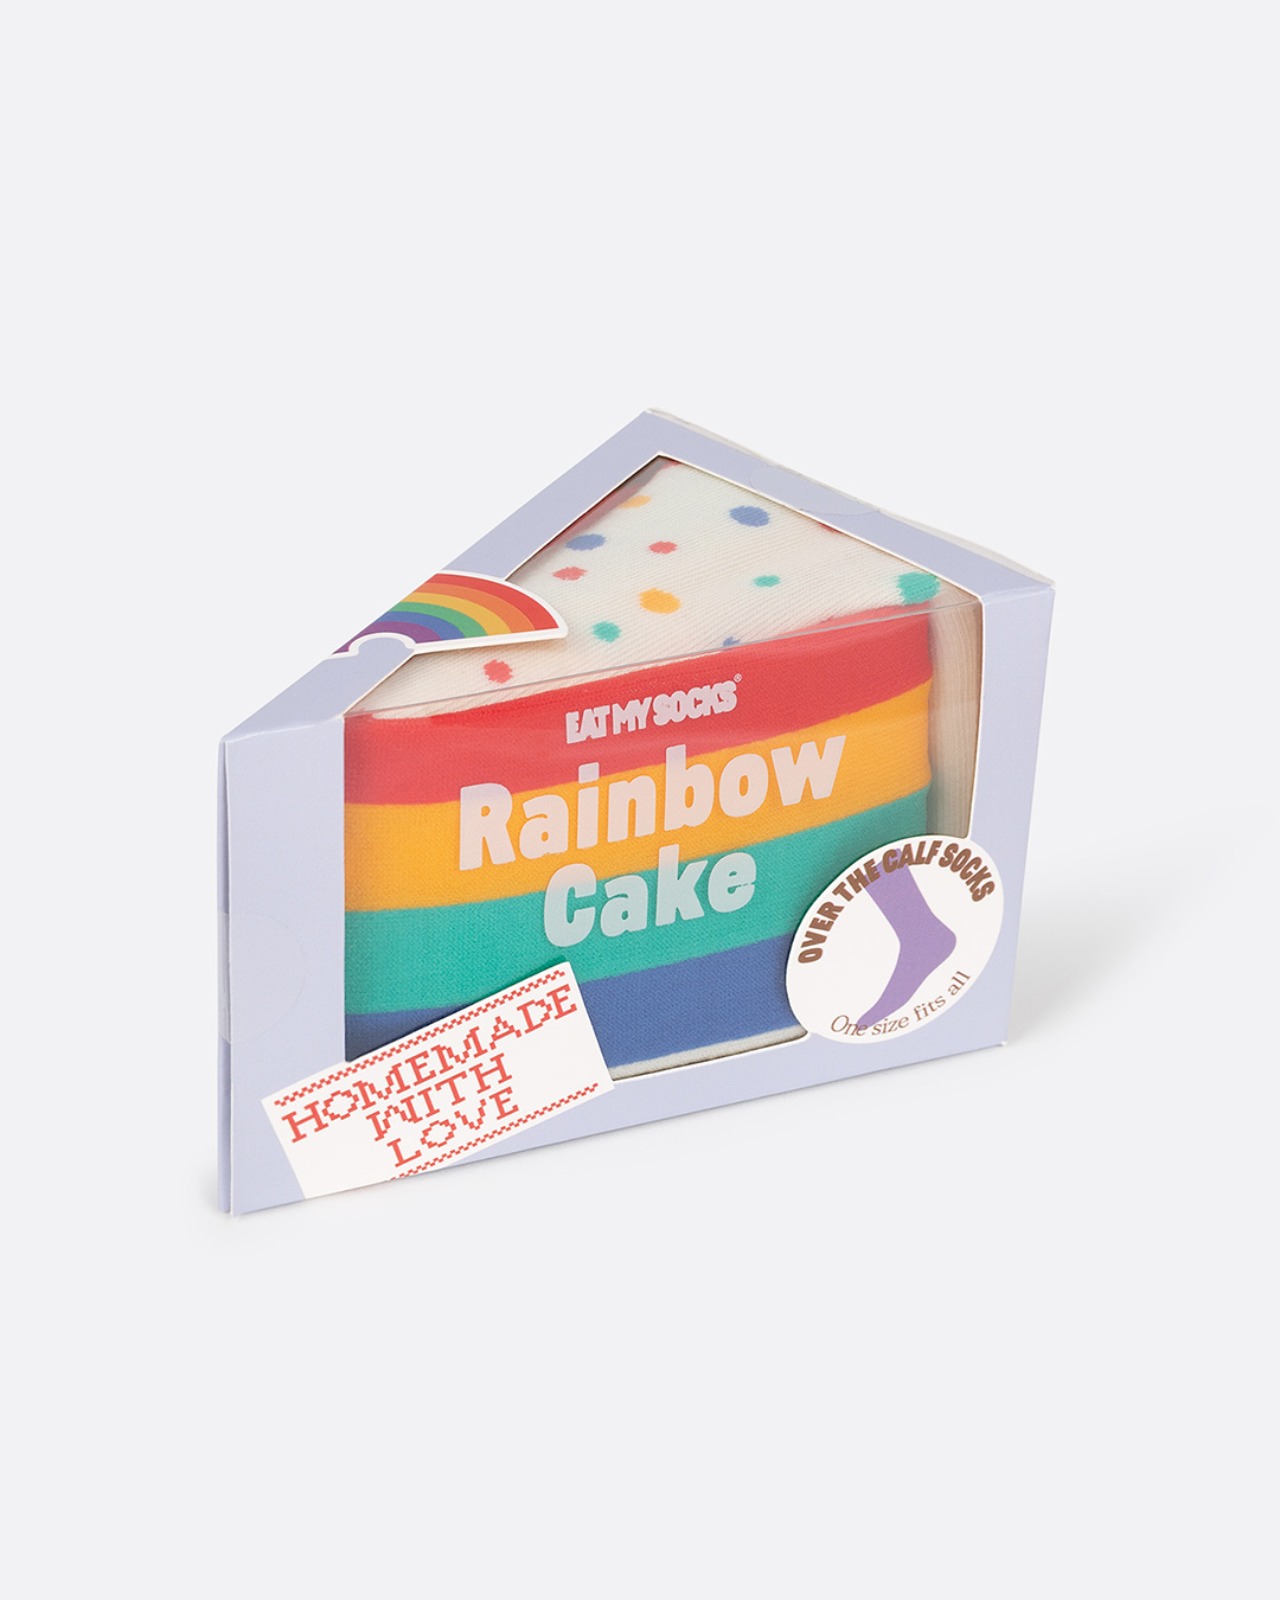 [EAT MY SOCKS] Rainbow Cake